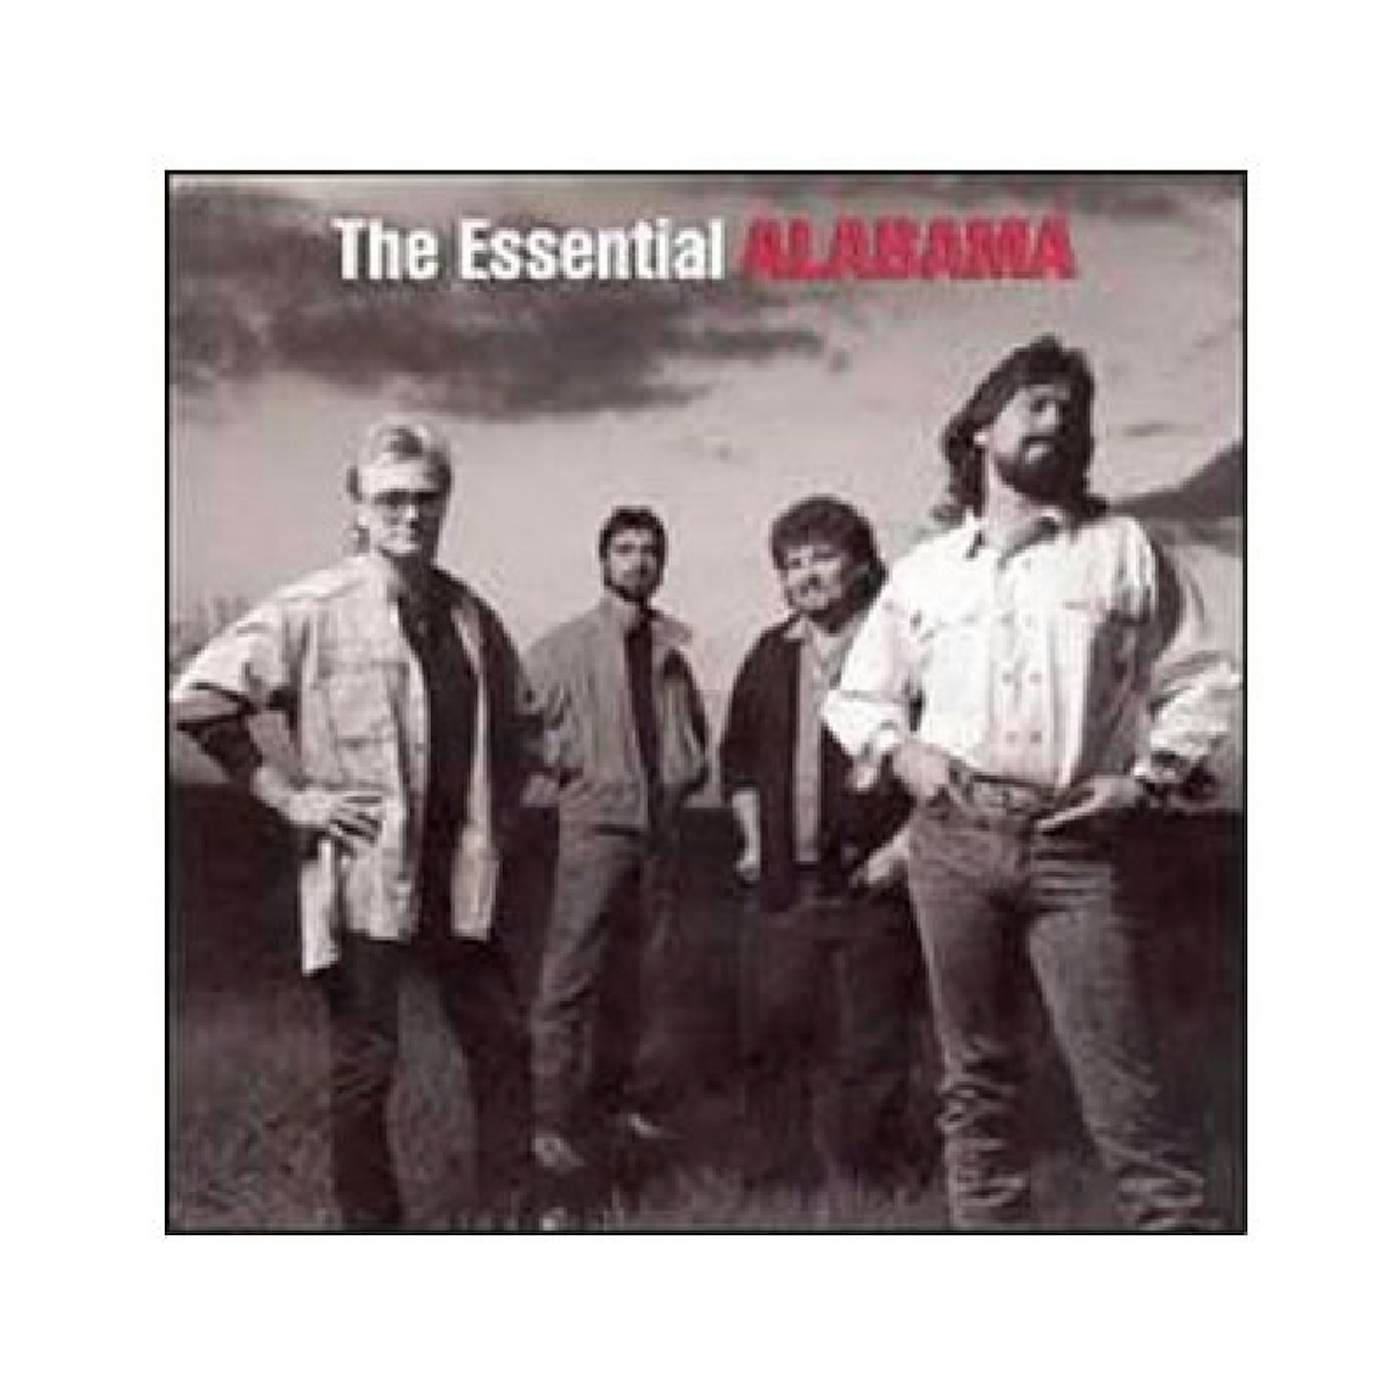 Alabama 2 CD set- The Essential